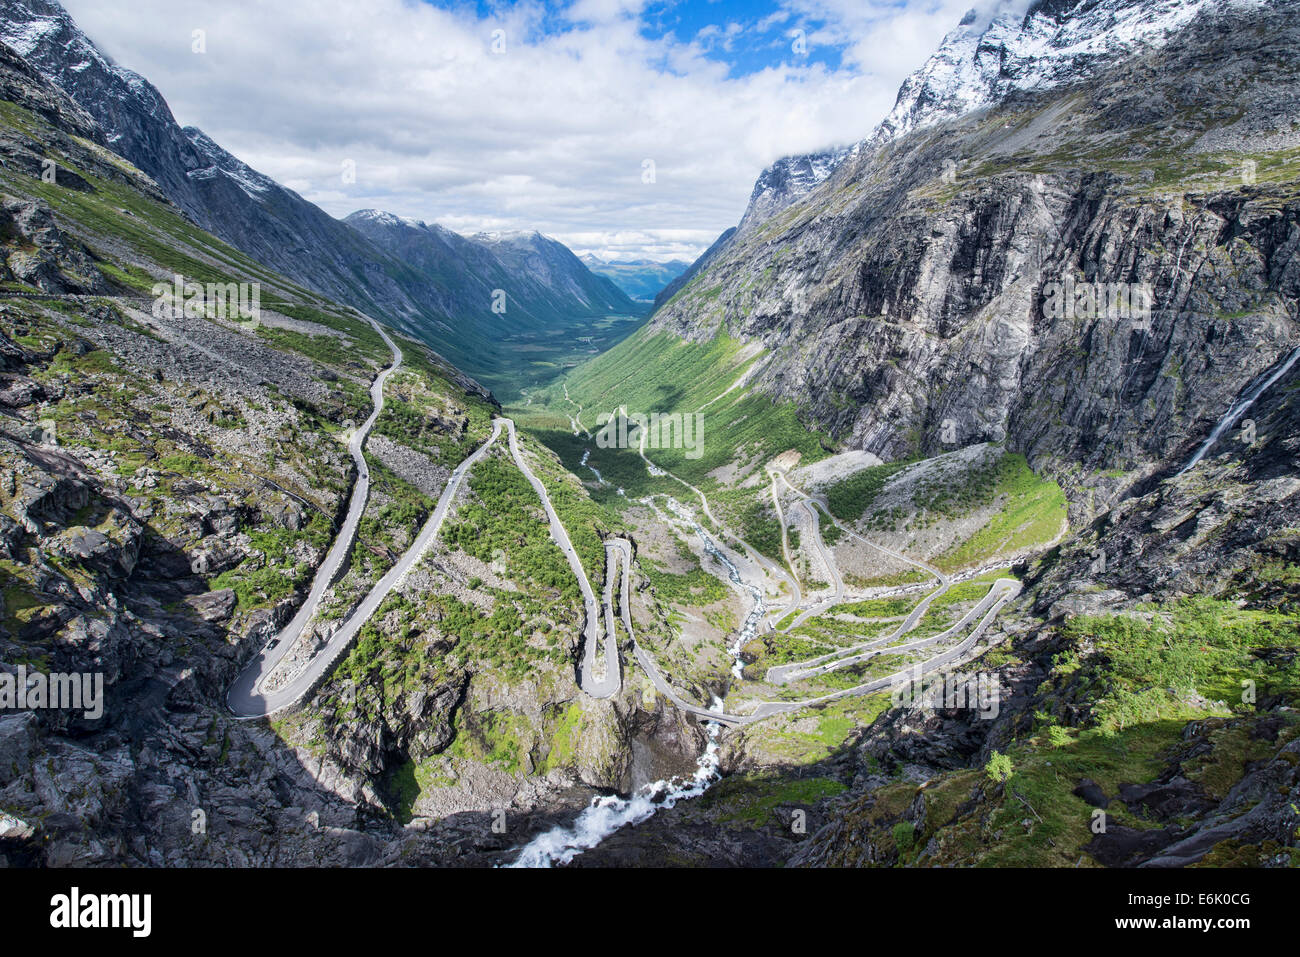 La sinueuse route Touristique National Trollstigen sur les montagnes en Norvège Banque D'Images